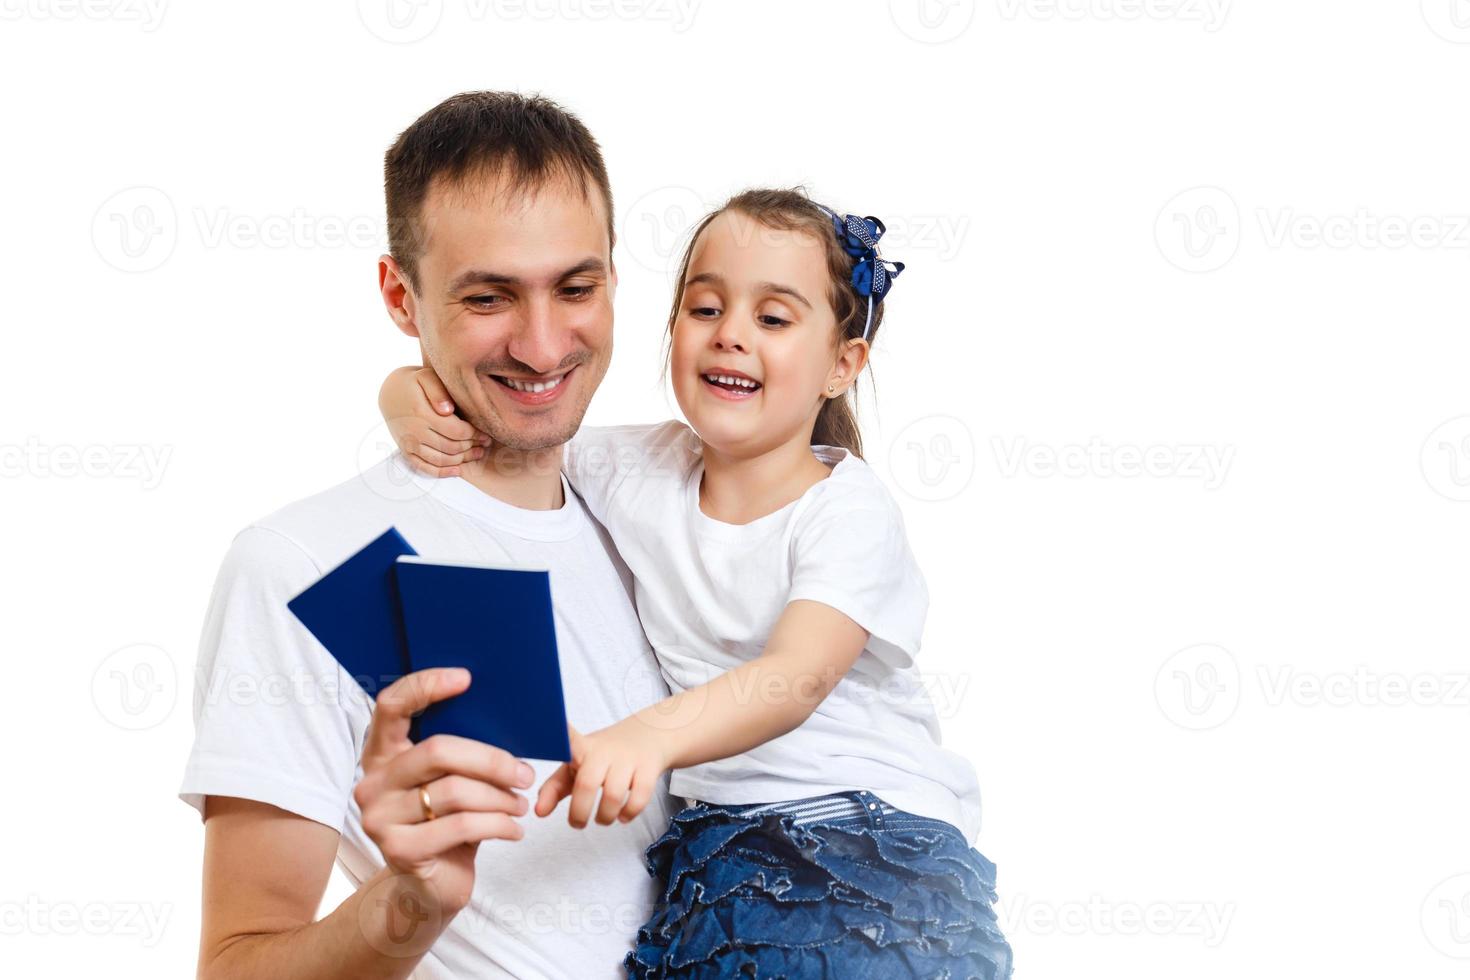 retrato de estúdio de conceito de viagem do pai muito jovem com as mãos para cima segurando o passaporte com bilhetes foto